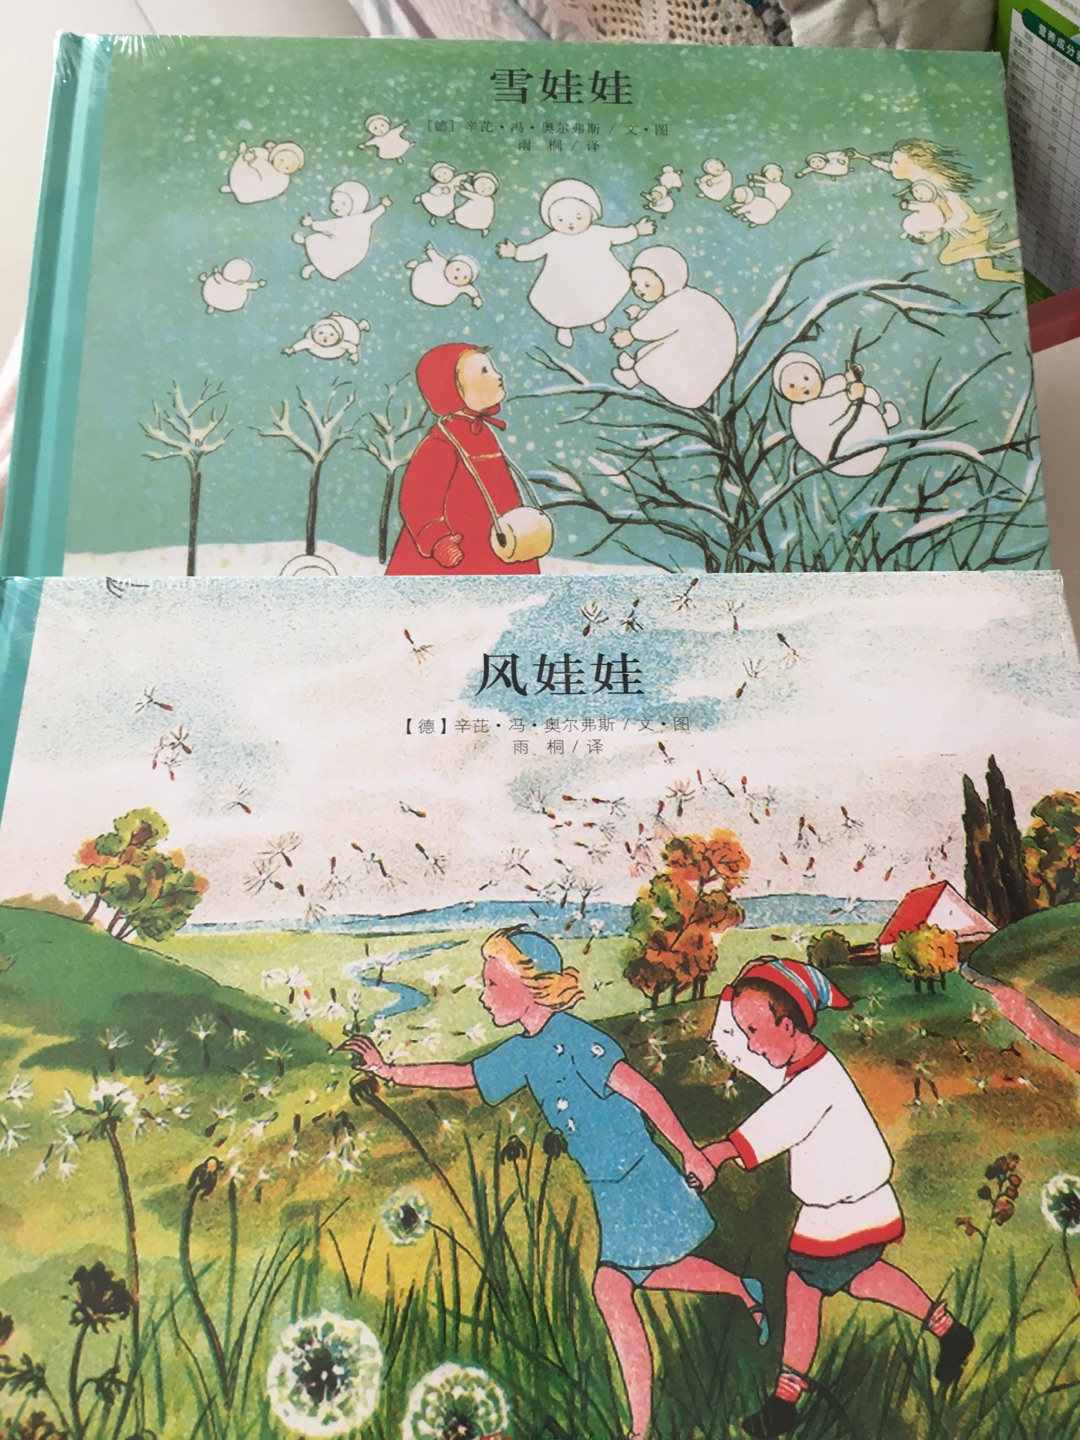 本来想给小宝宝买英文幼儿绘本的，选着选着看到了很多中文绘本自己都很喜欢。先是发现了［玛德琳系列］觉得很有趣，就进这家［童立方书店］看了看，有好多书都很喜欢，特别经典！在这家买了好多书，收到发现入手了很多［爱莎］的书。昨天又下单了一本［森林里的小宝贝］。。。。买了太多，还有一些爱莎的书最终没买了。［问问熊?先生］这本插画自己不是很喜欢这个风格的，不过当初选的时候觉得内容寓意比较好就买了。薄薄的一本，内容简单适合小朋友。插画更喜欢［爱莎］系列，和［雪娃娃］［风娃娃］的风格呢！［玛德琳］系列的插画相对抽象一些。